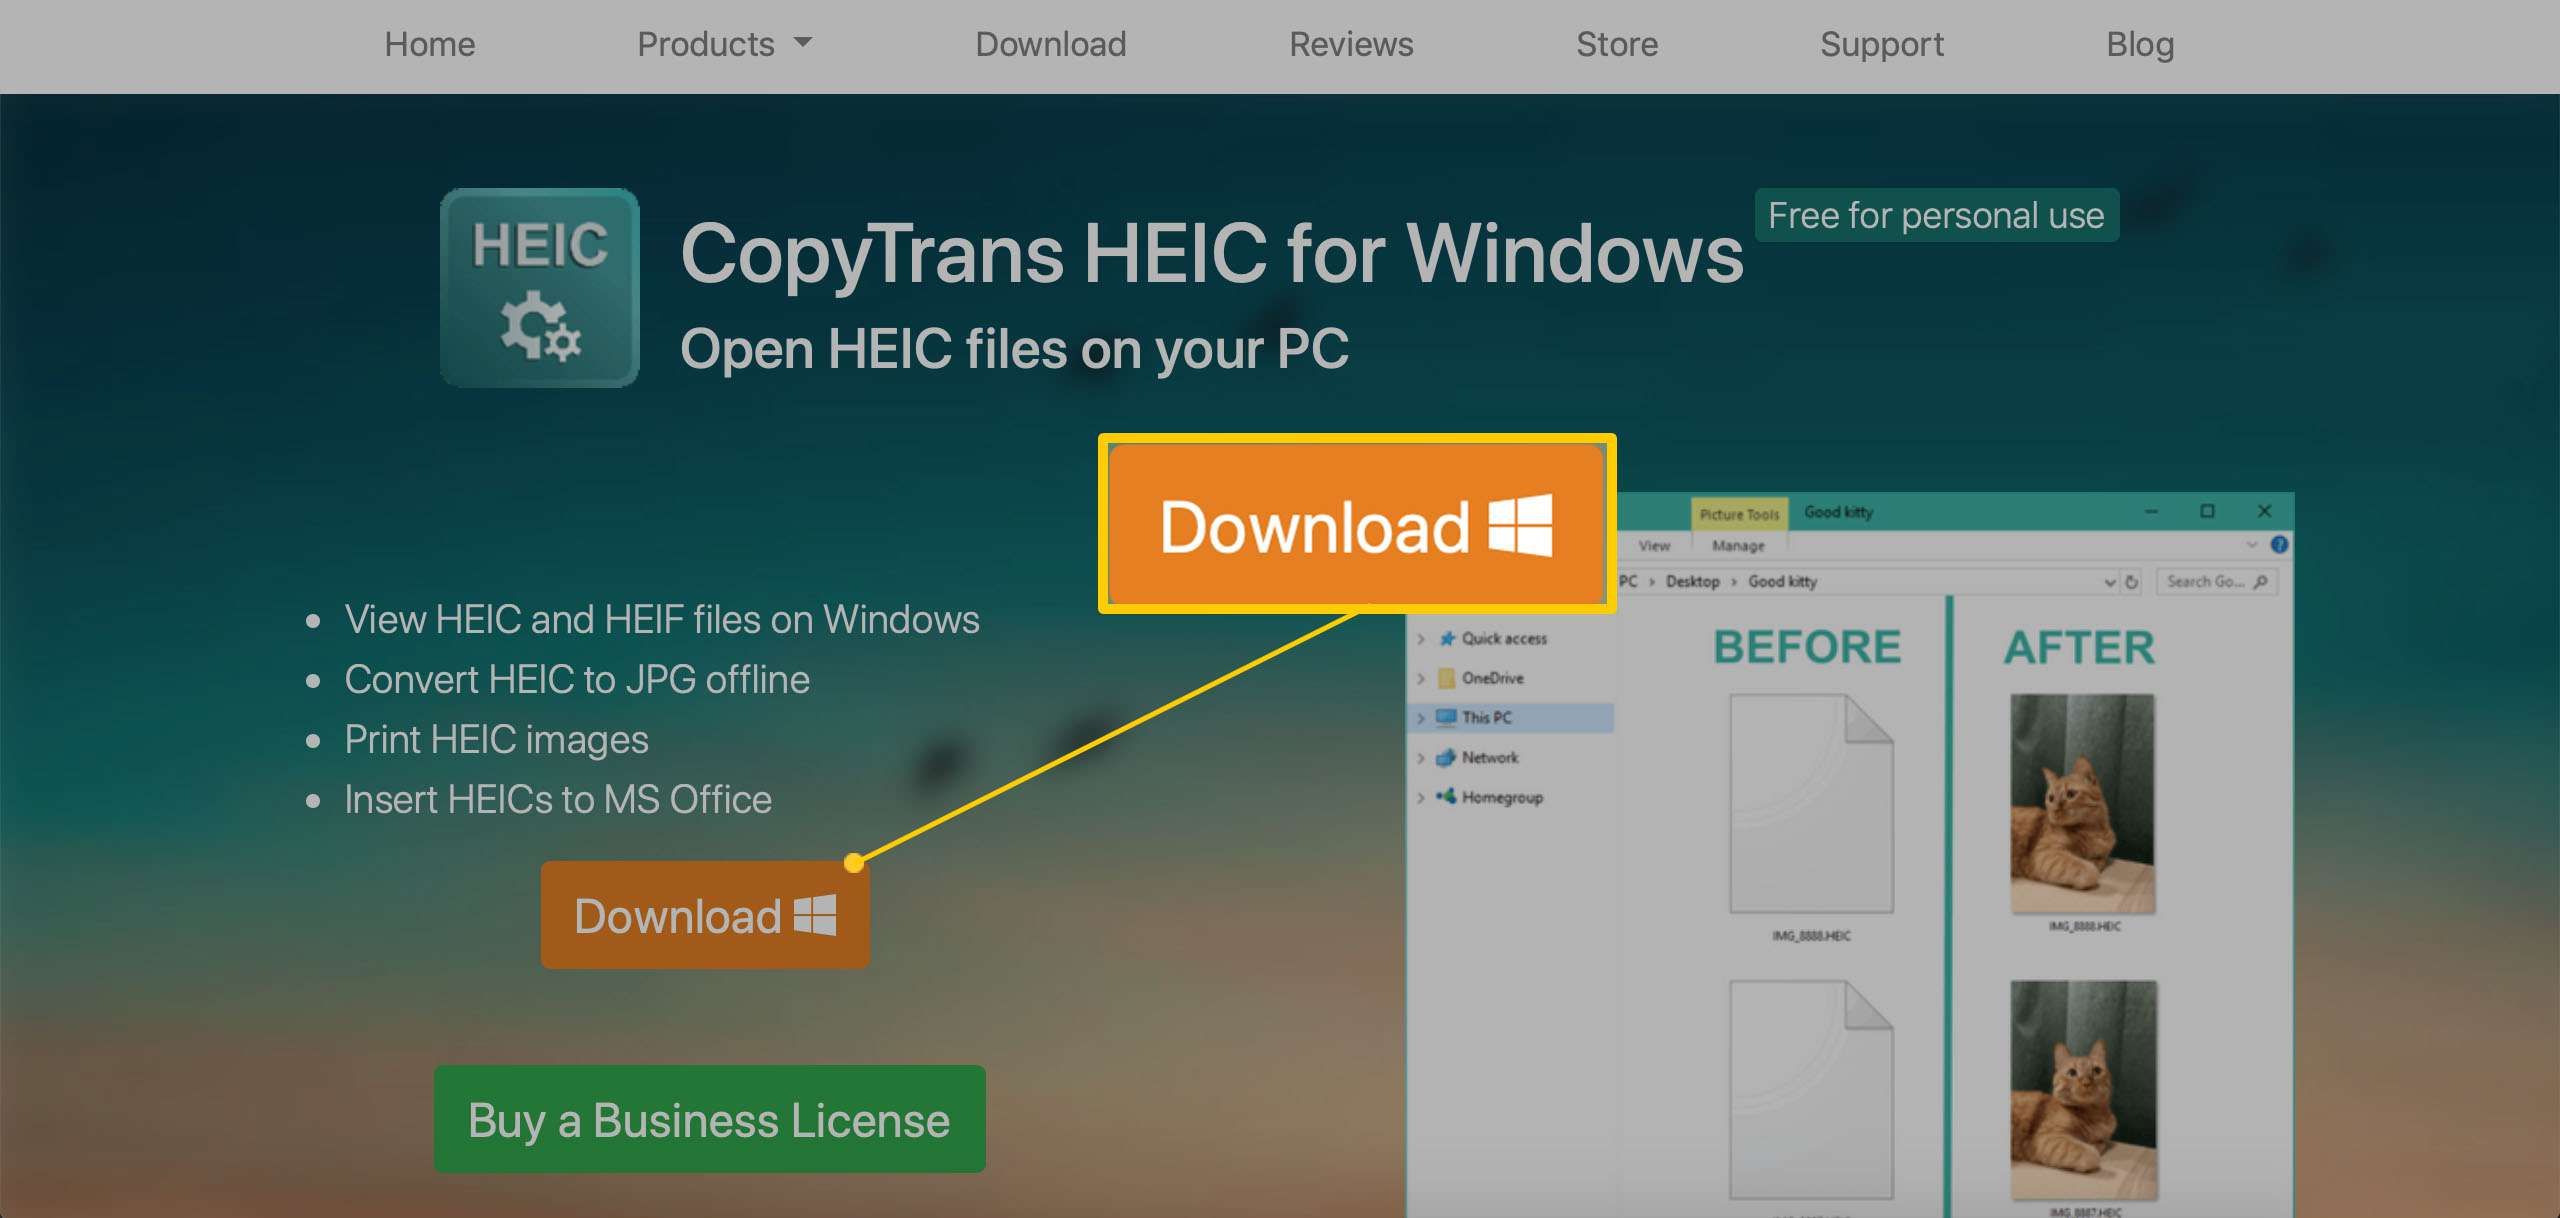 Окно браузера, отображающее пакет программного обеспечения CopyTrans HEIC для Windows